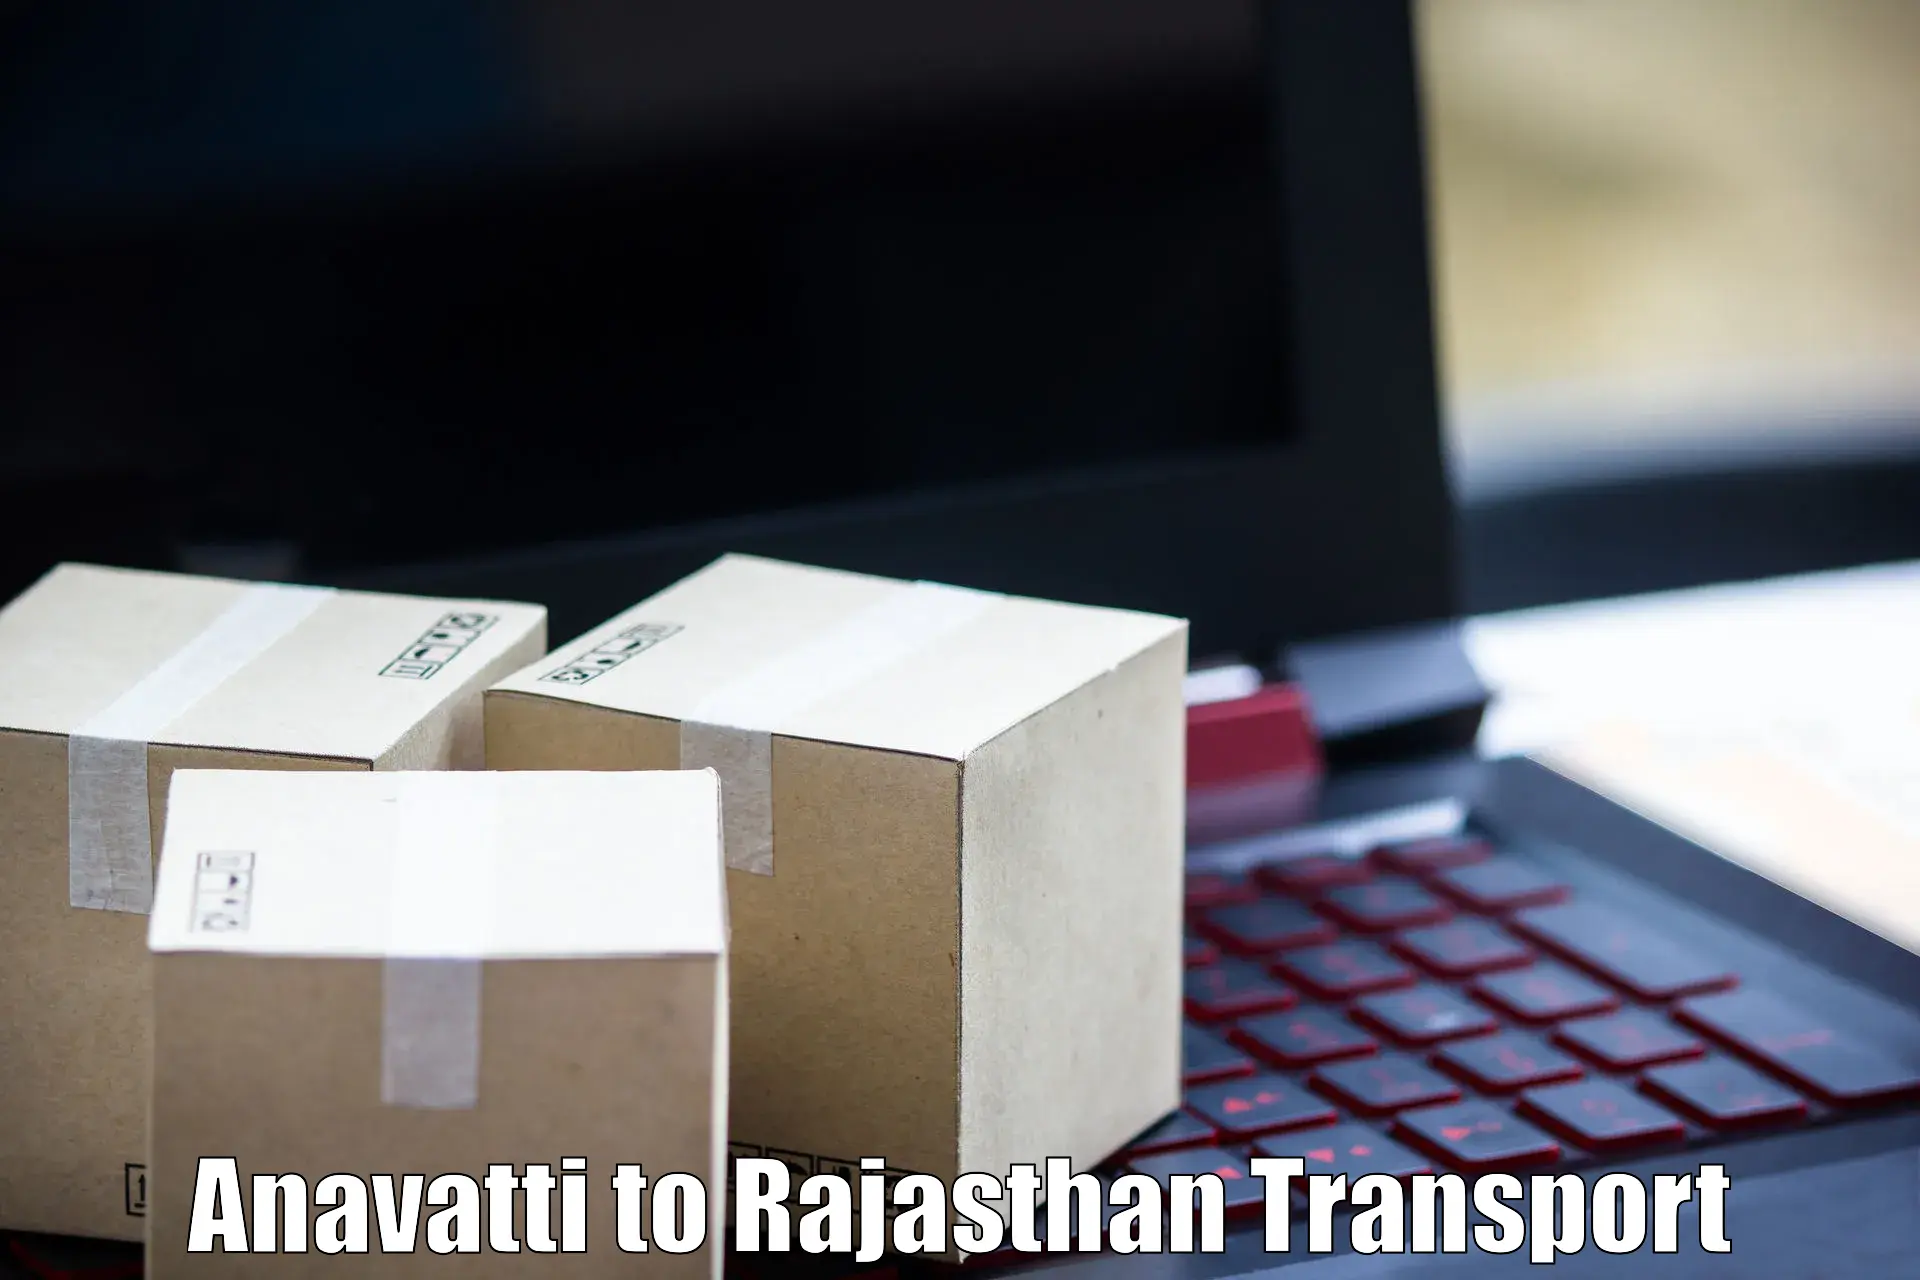 Delivery service Anavatti to Sardarshahr